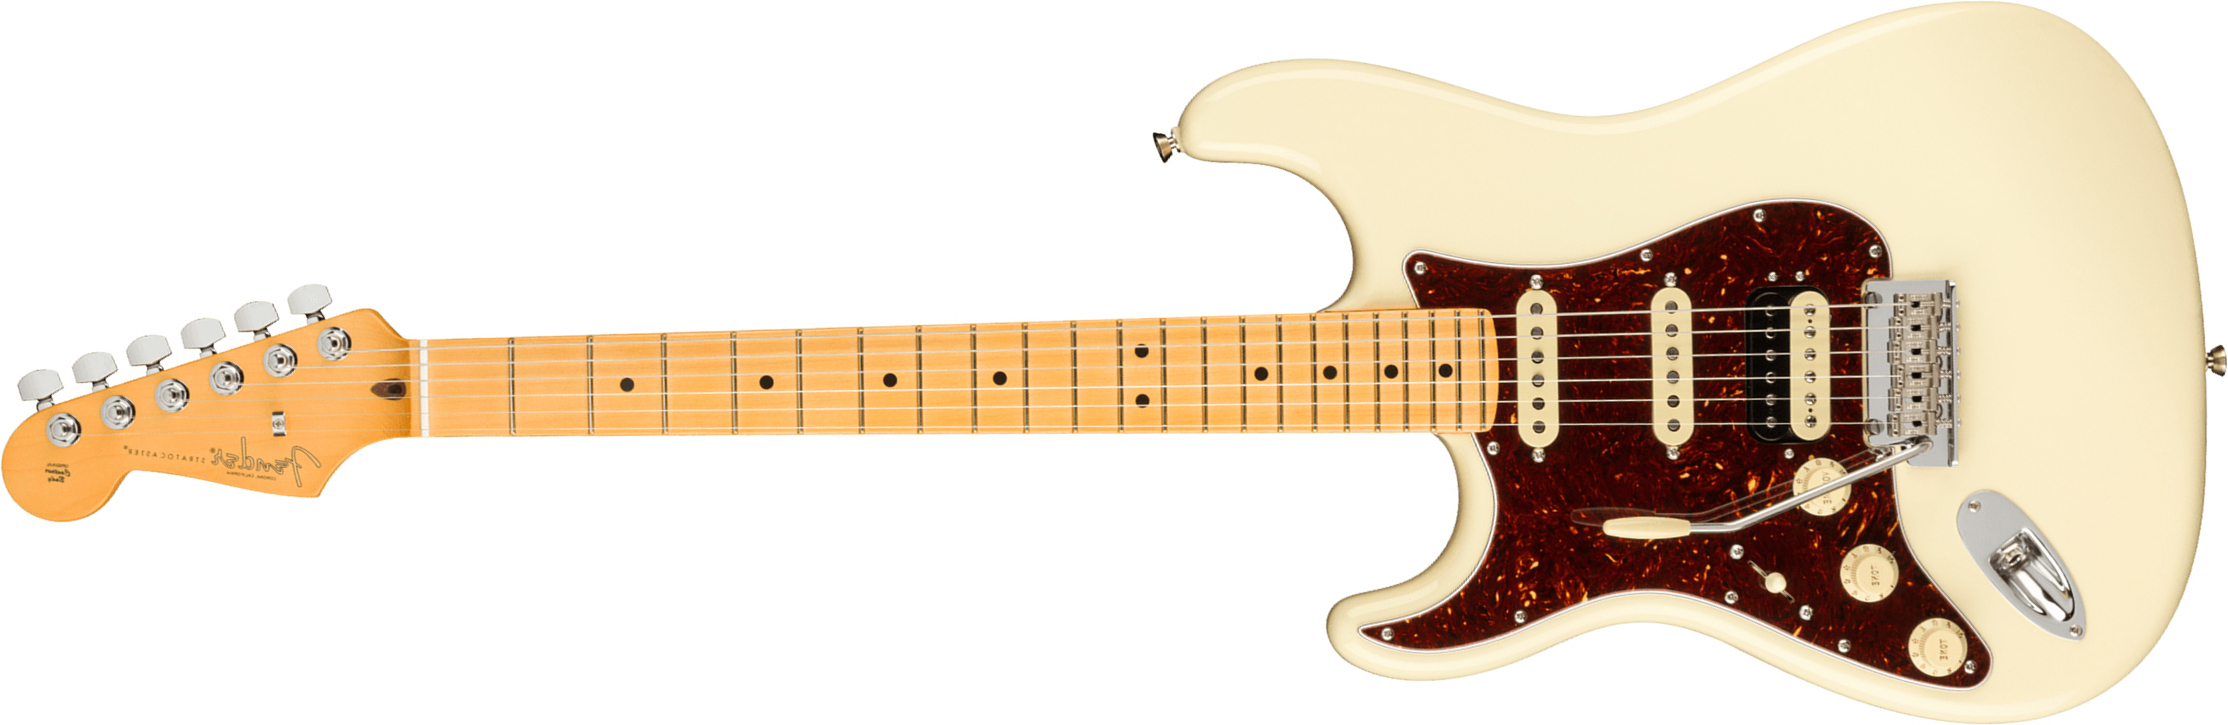 Fender Strat American Professional Ii Lh Gaucher Usa Mn - Olympic White - Linkshandige elektrische gitaar - Main picture